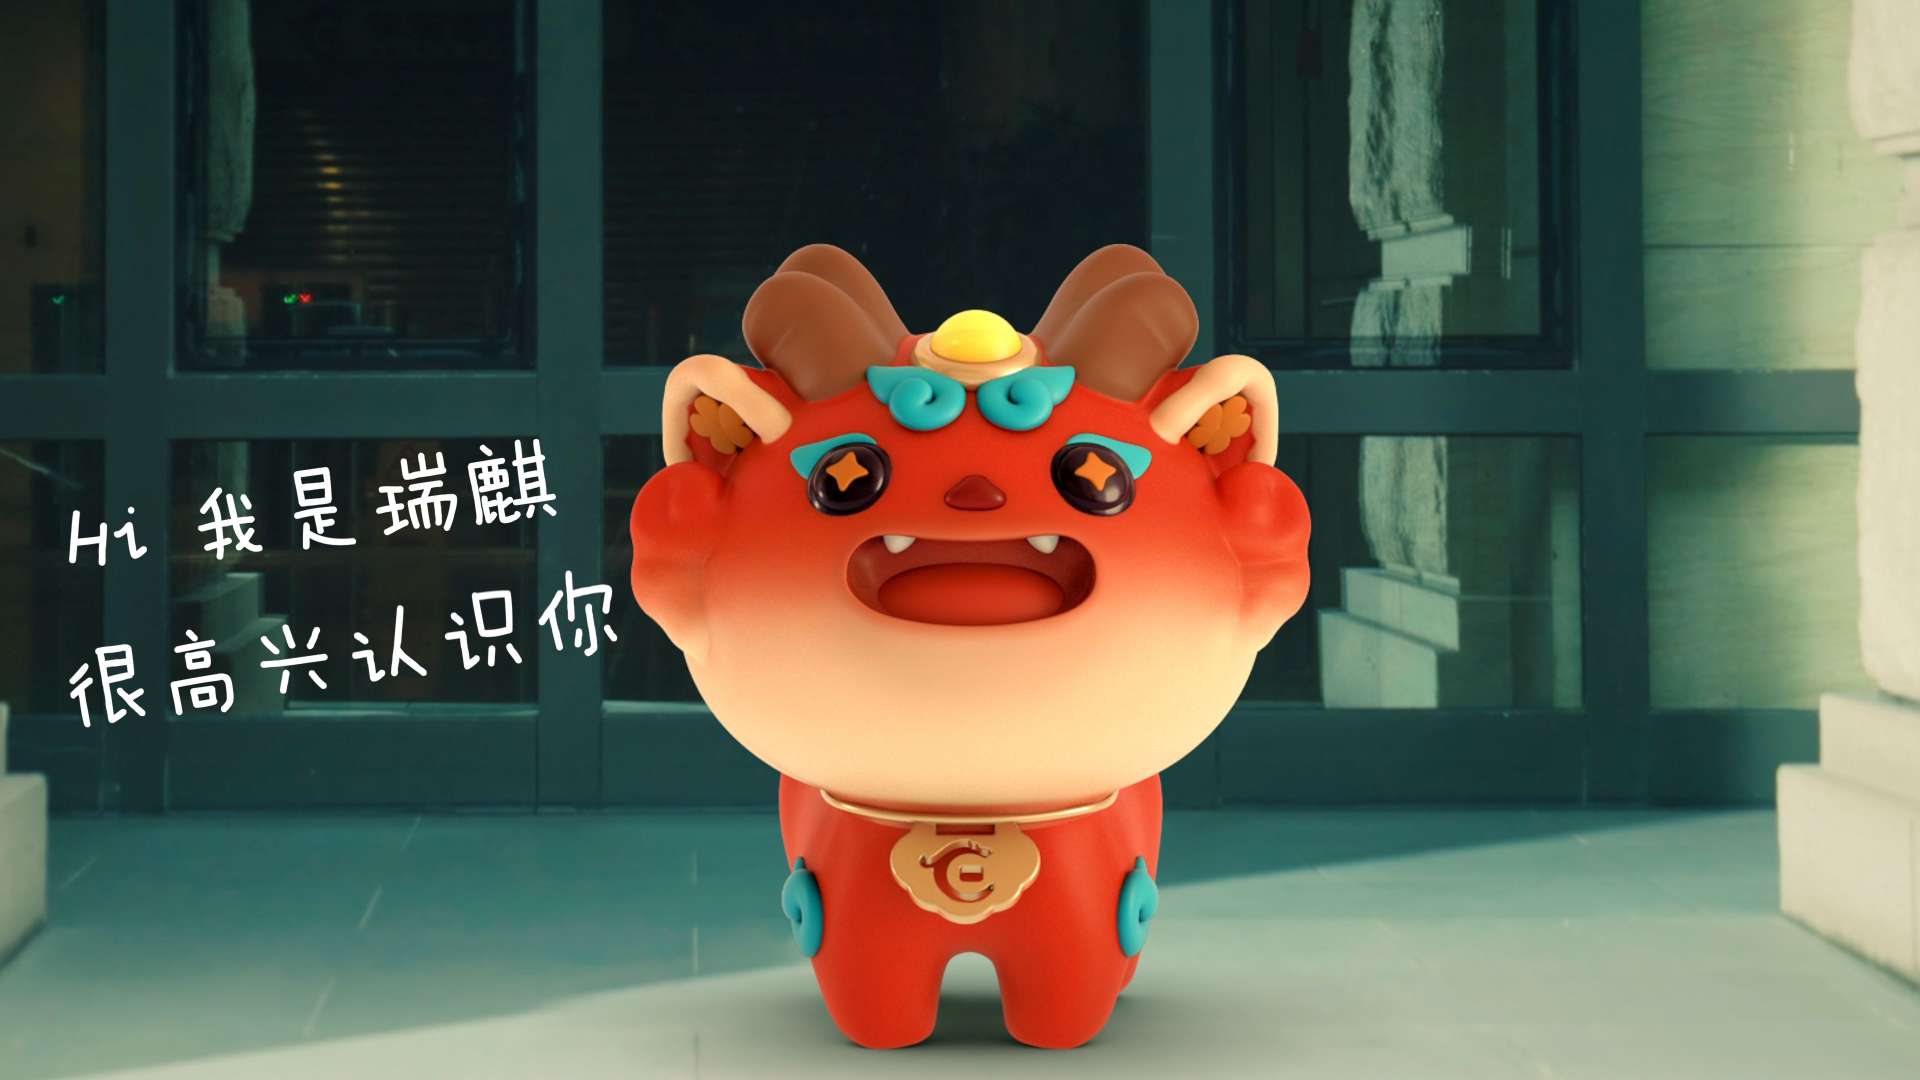 我是瑞麒-华夏银行吉祥物首发